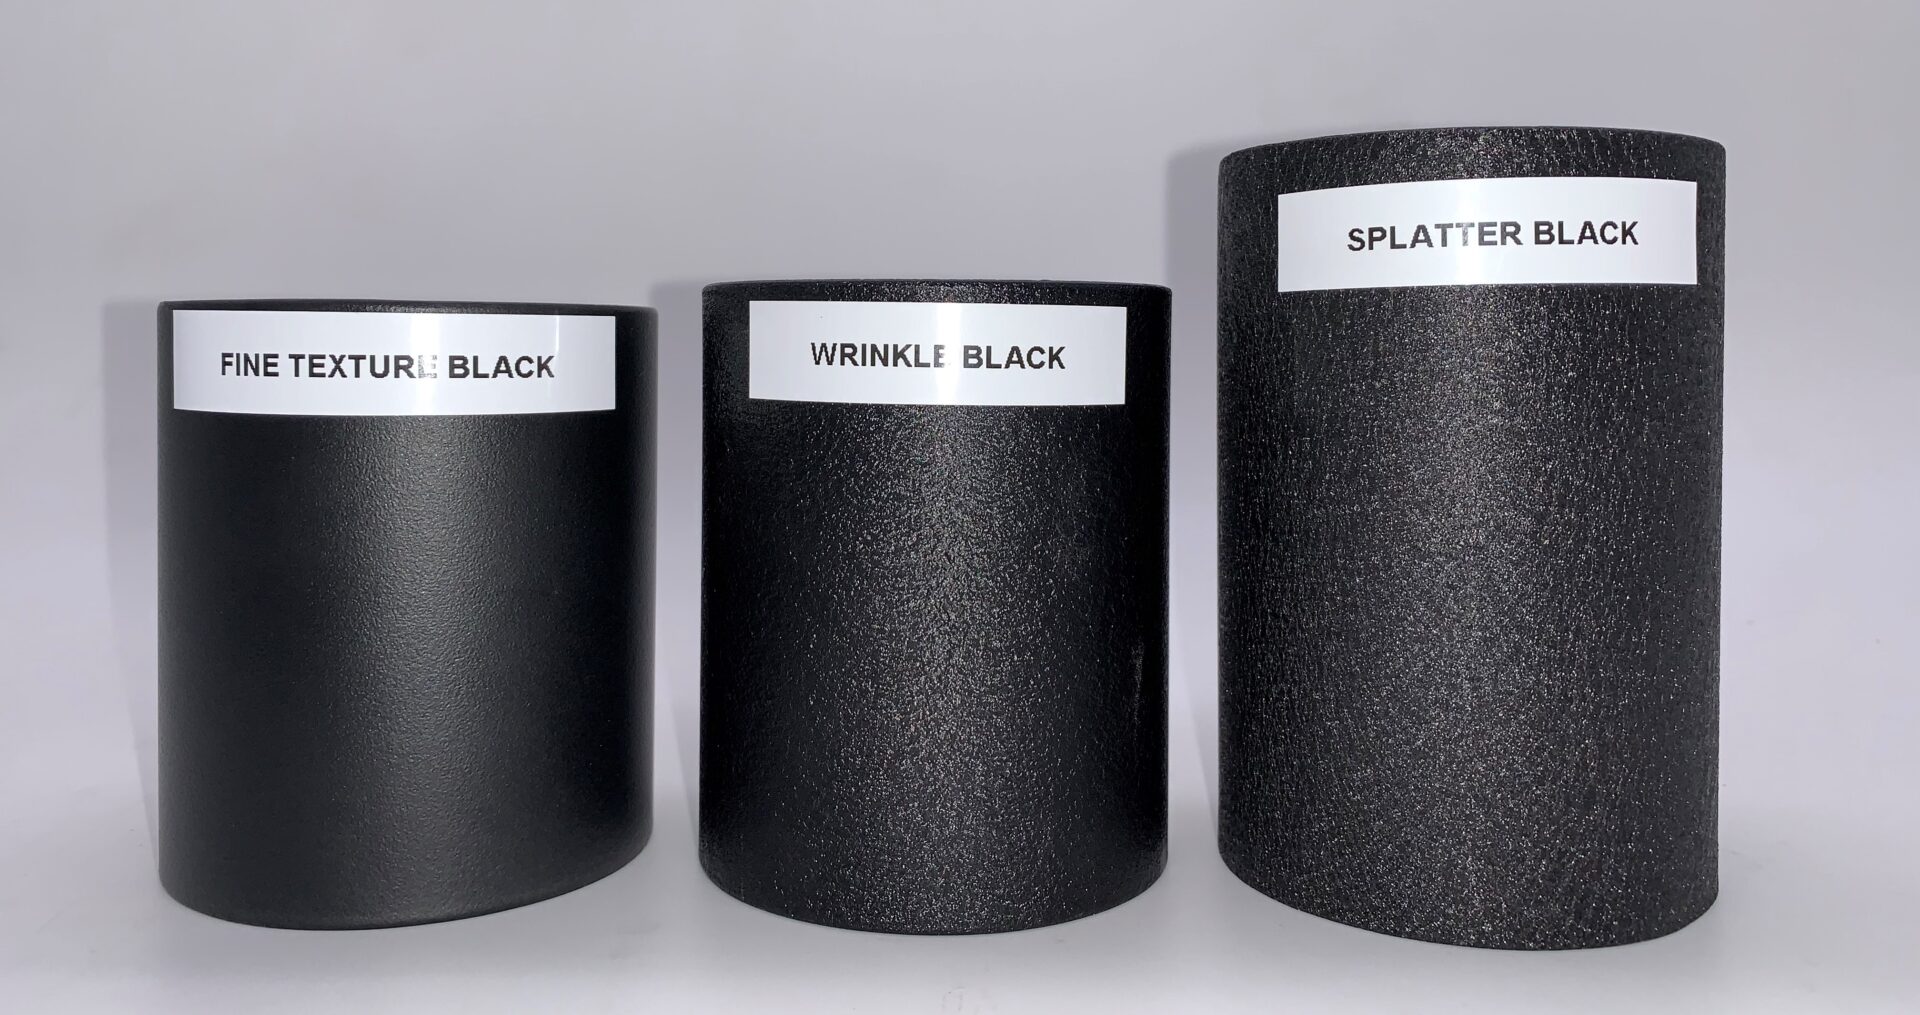 Three splatter black and wrinkle black